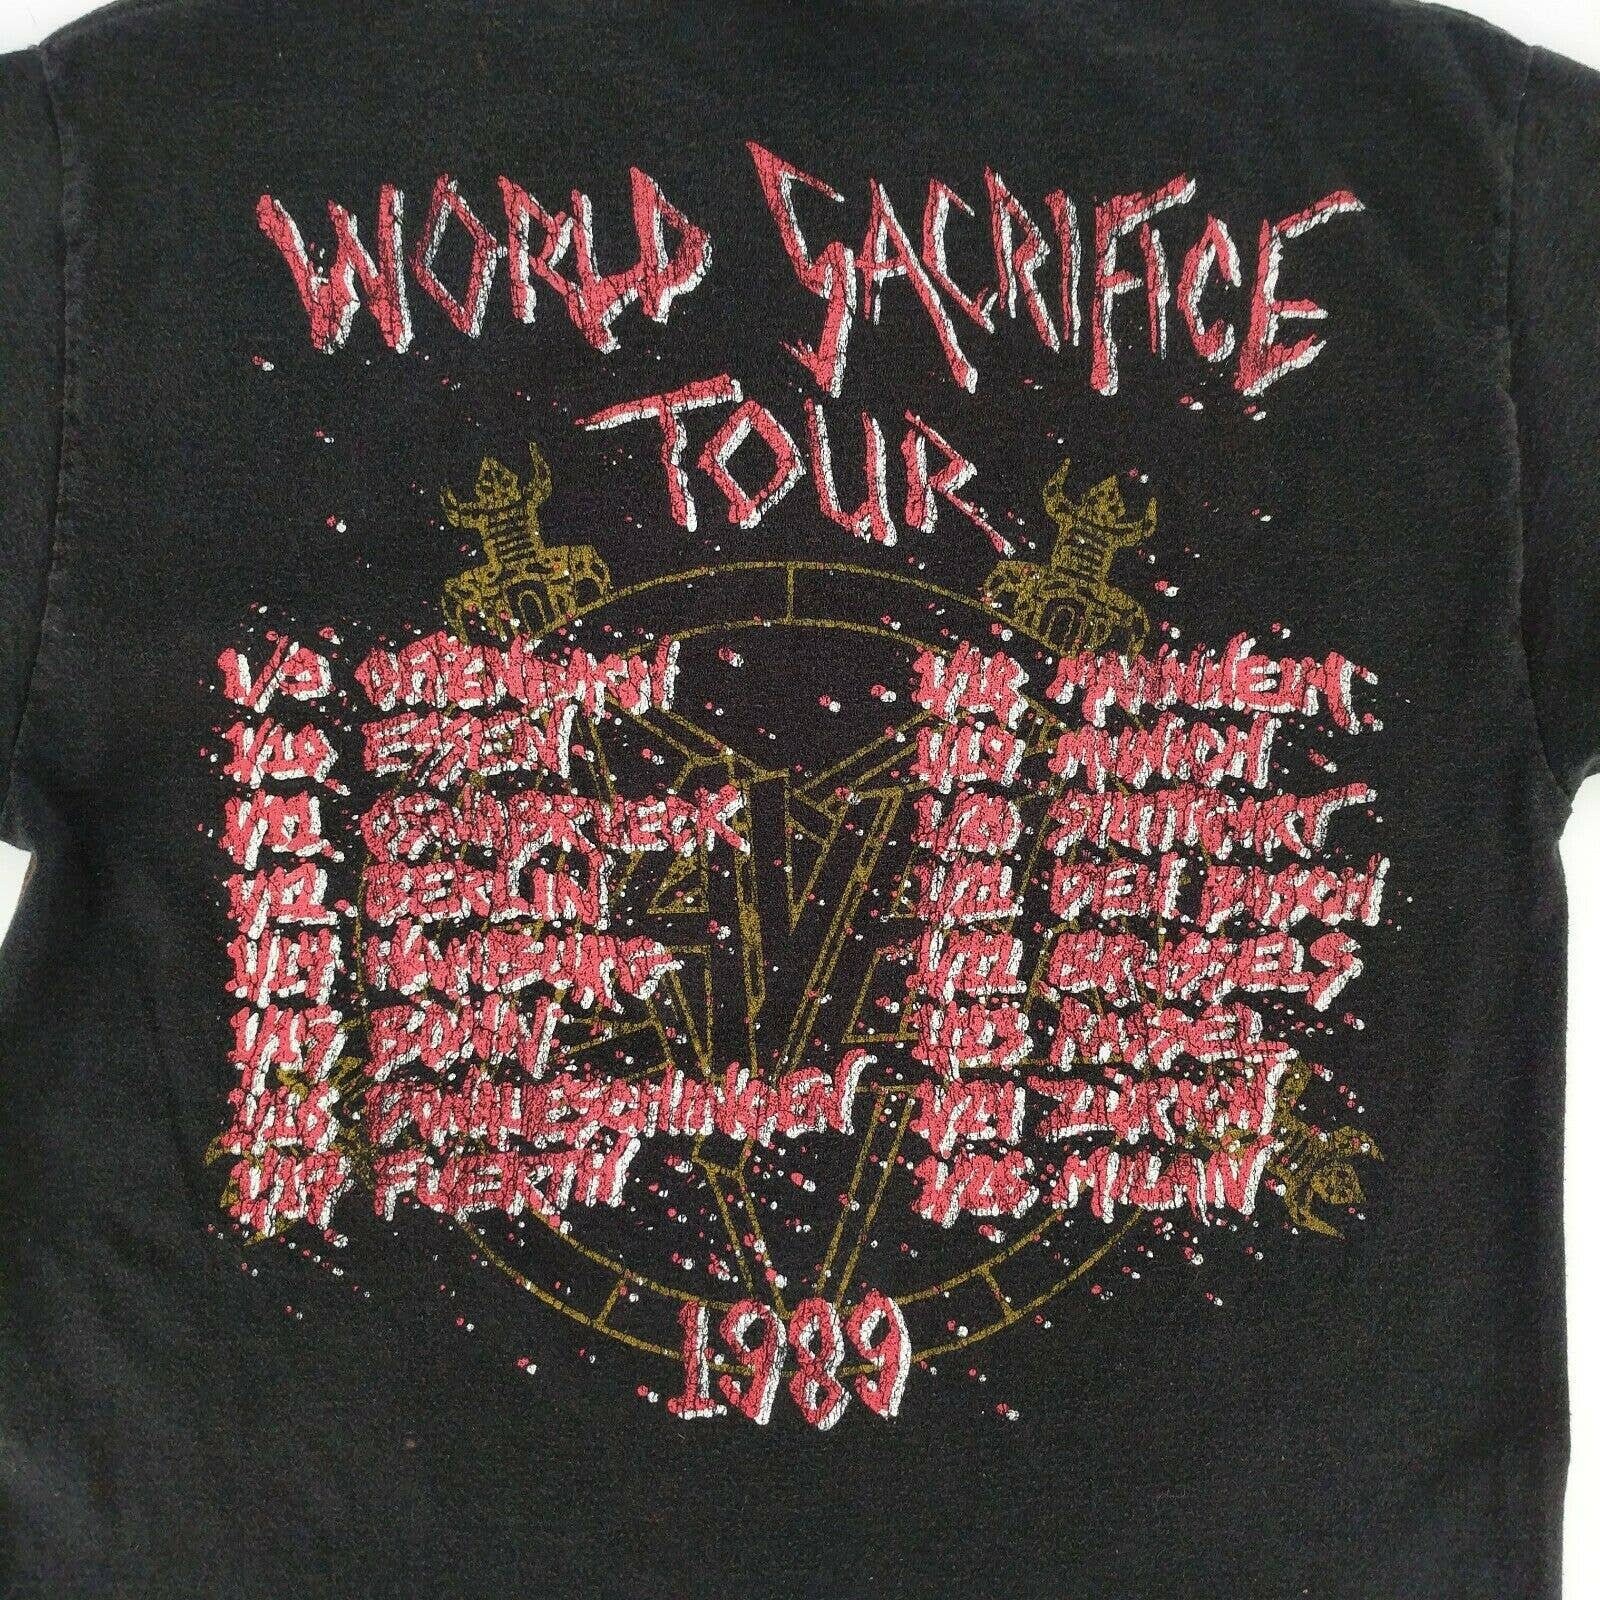 world sacrifice tour 1989